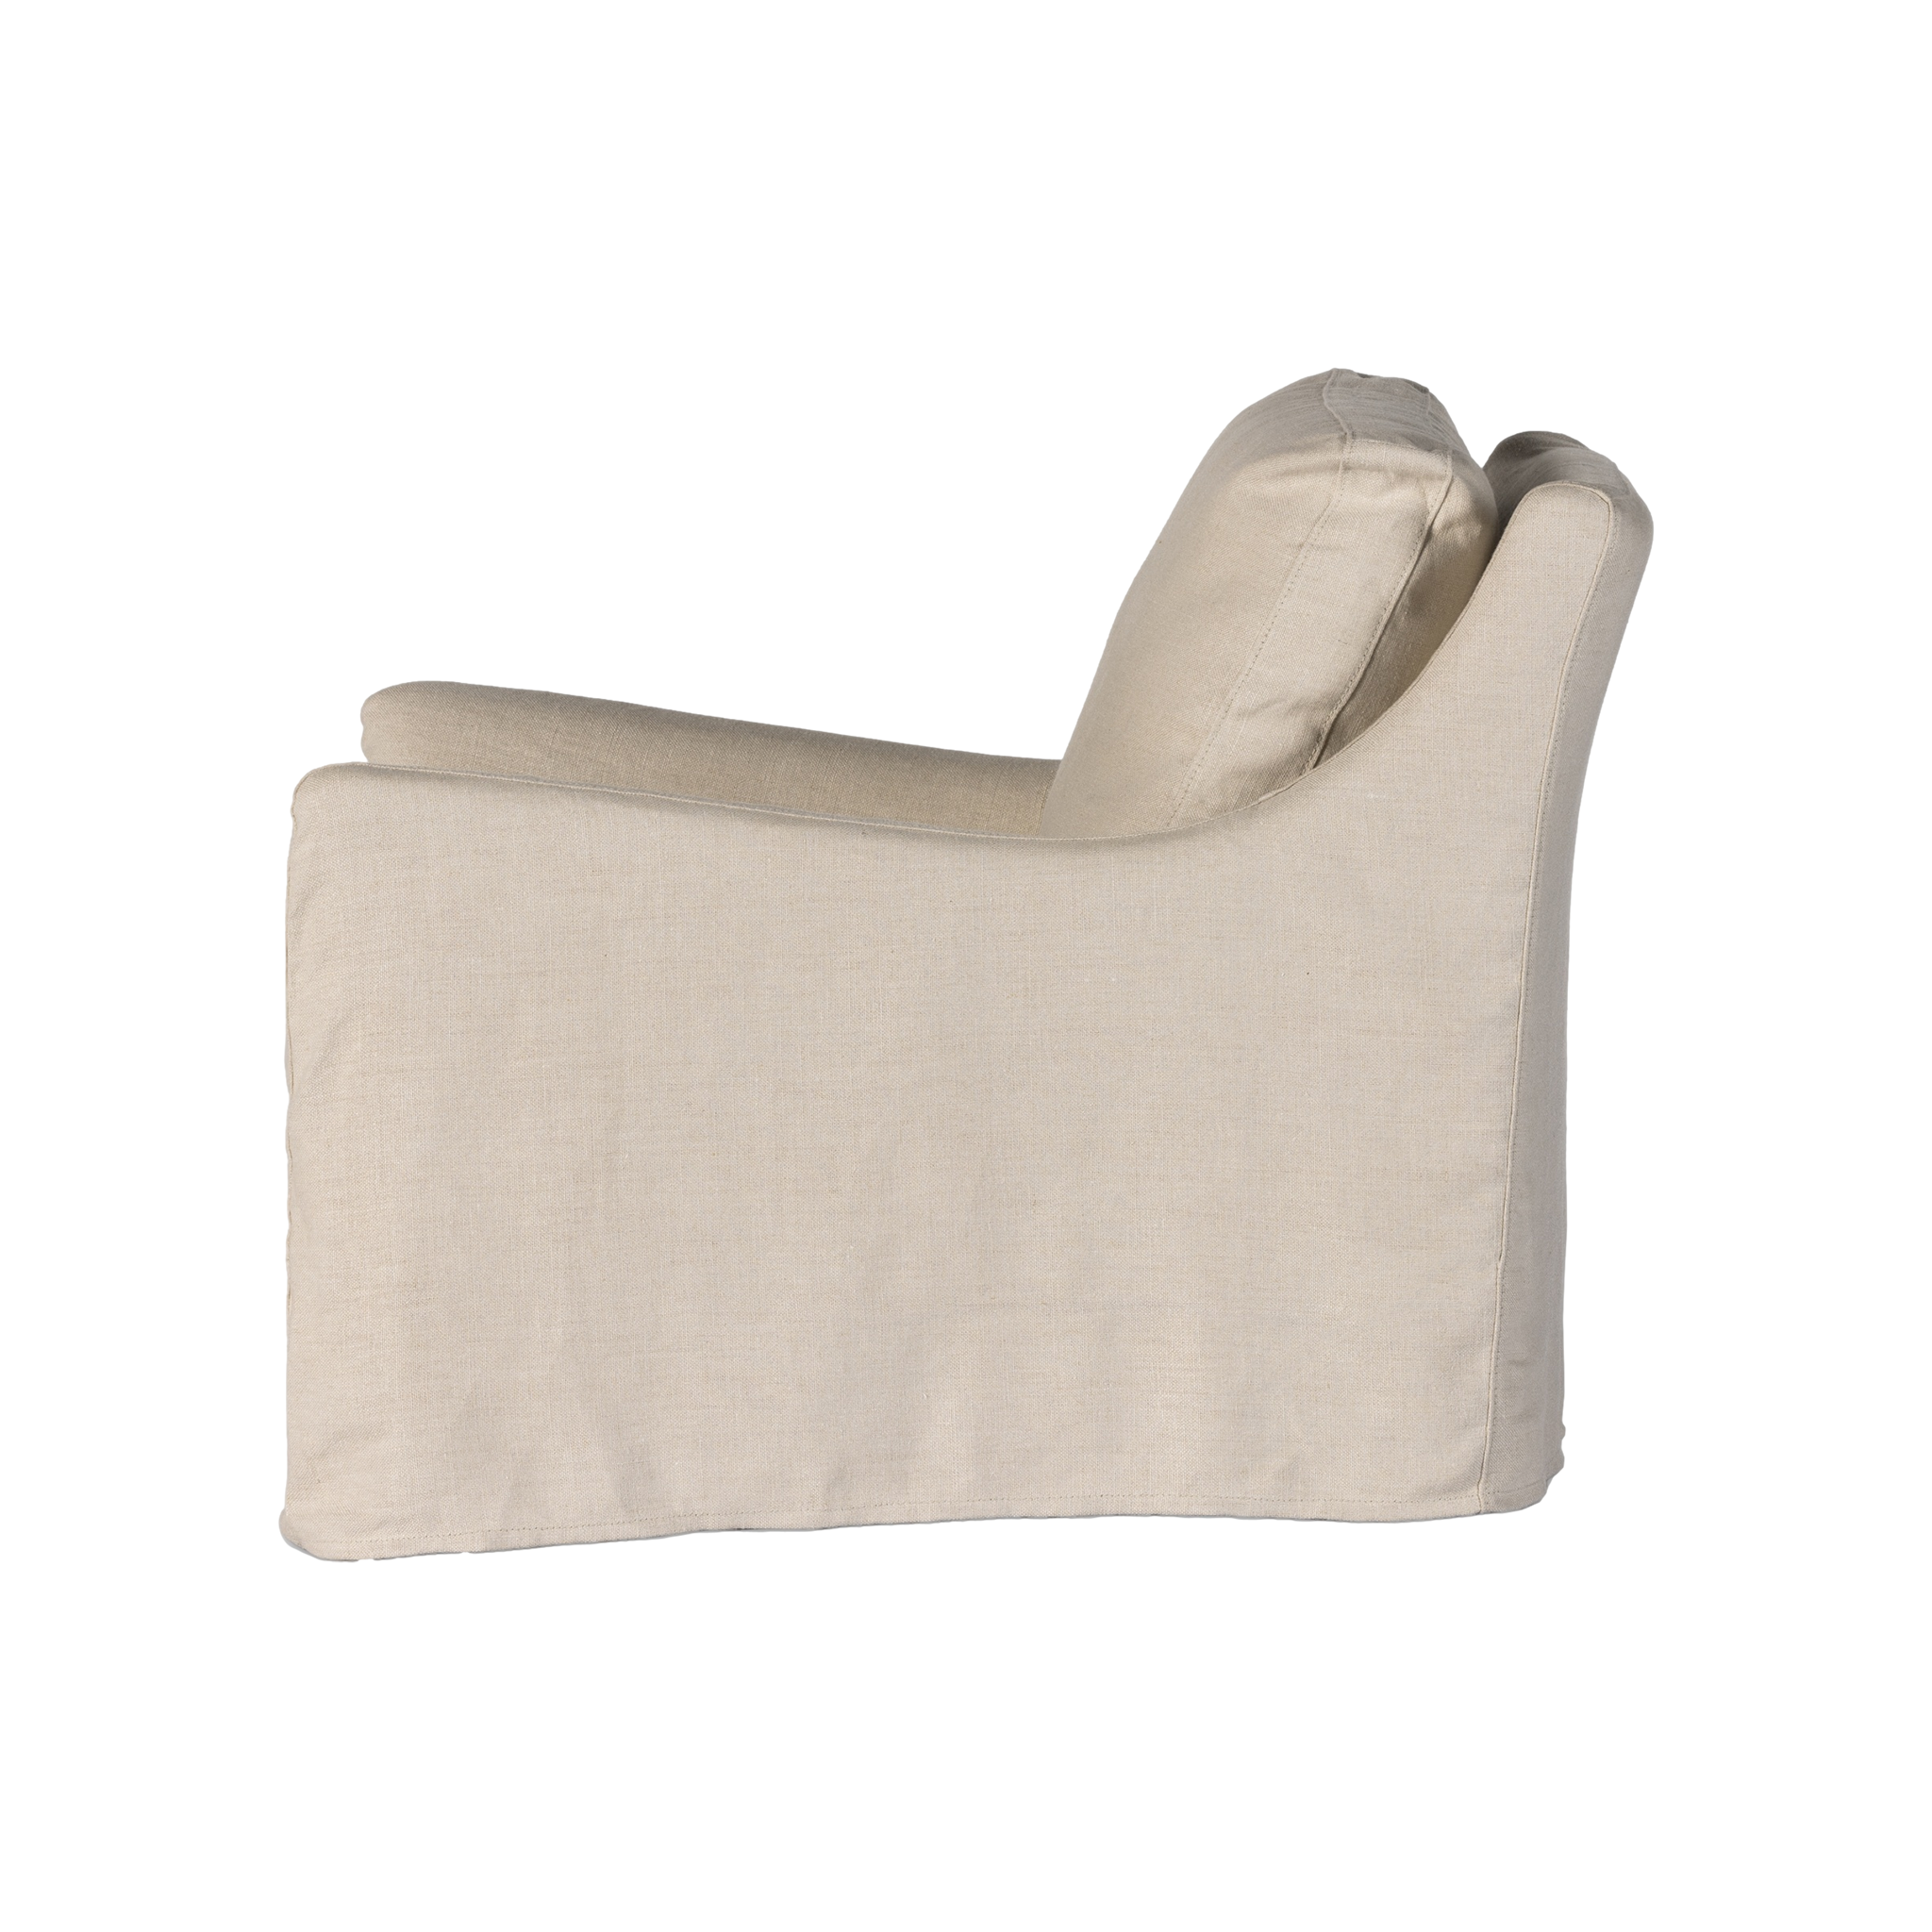 Monette Slipcover Swivel Chair in Natural